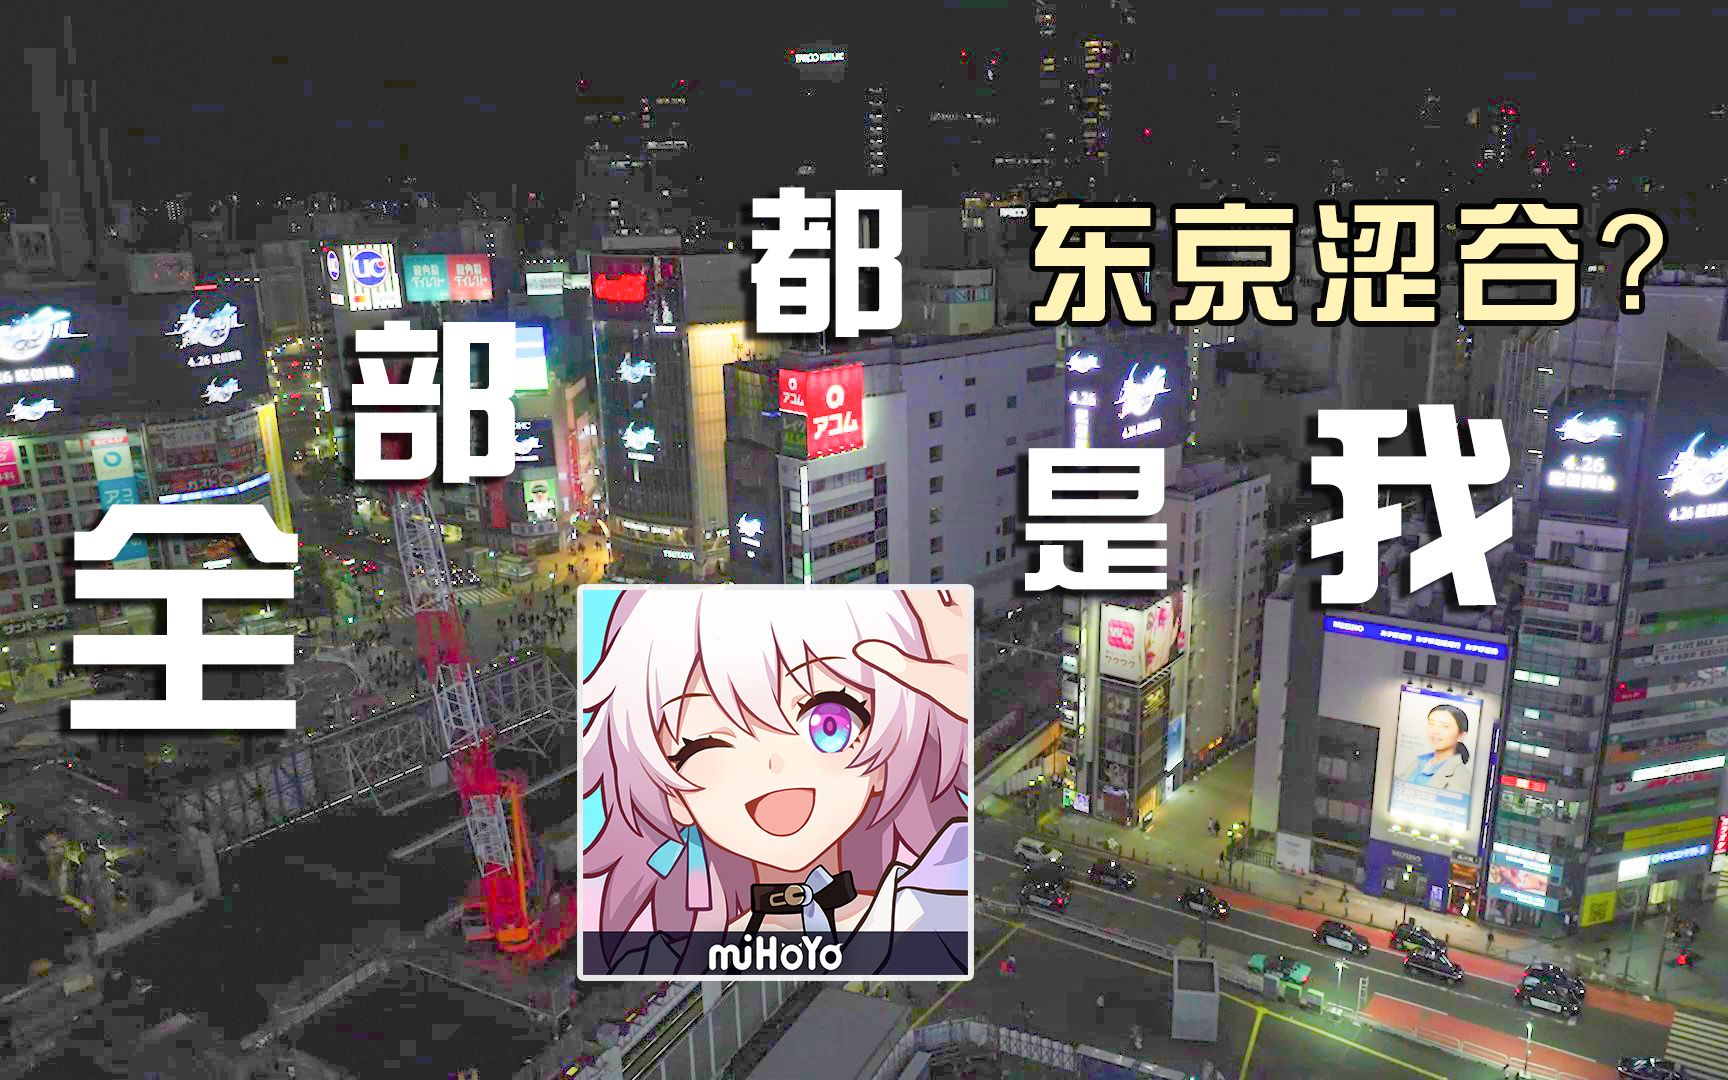 【日本实拍】今天涩谷的每一块屏，都写满了星穹铁道的名字……